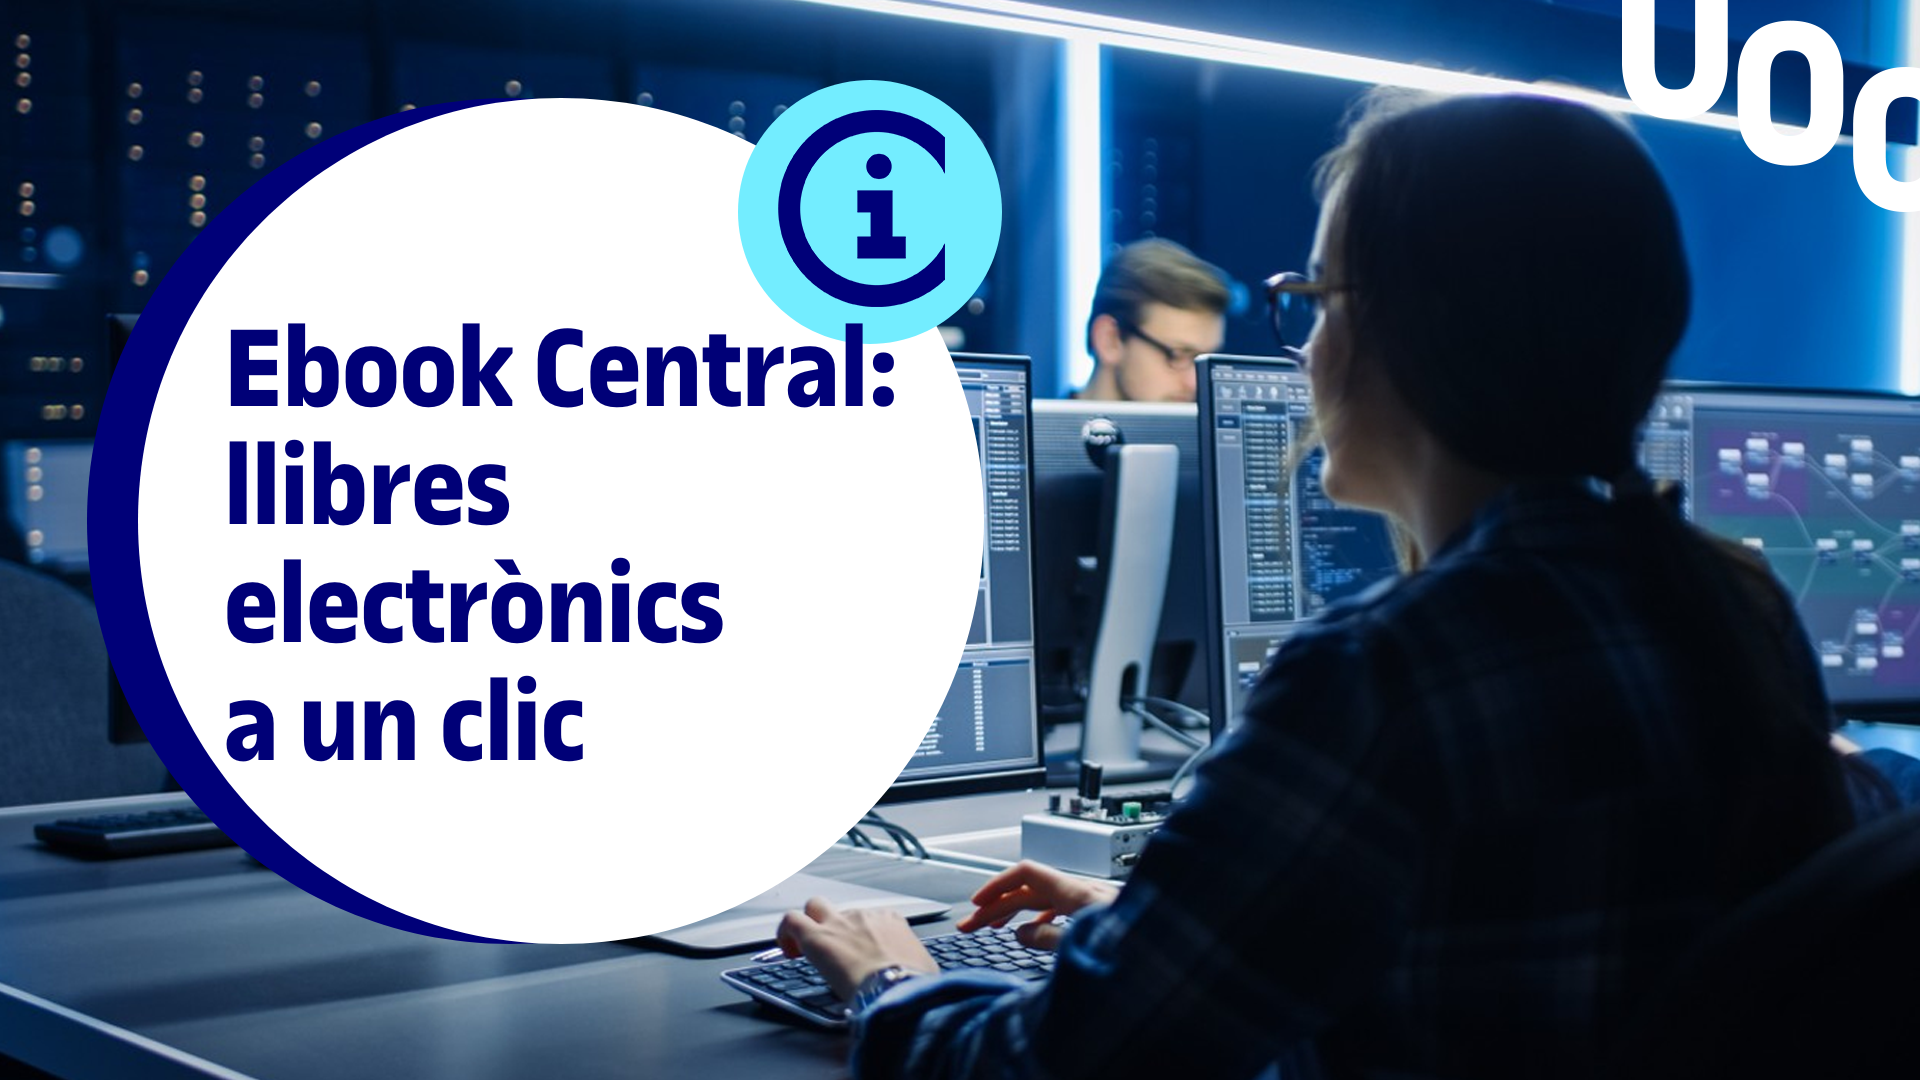 Webinar #InfoSkillsUOC Ebook Central, libros electrónicos a un clic | UOC